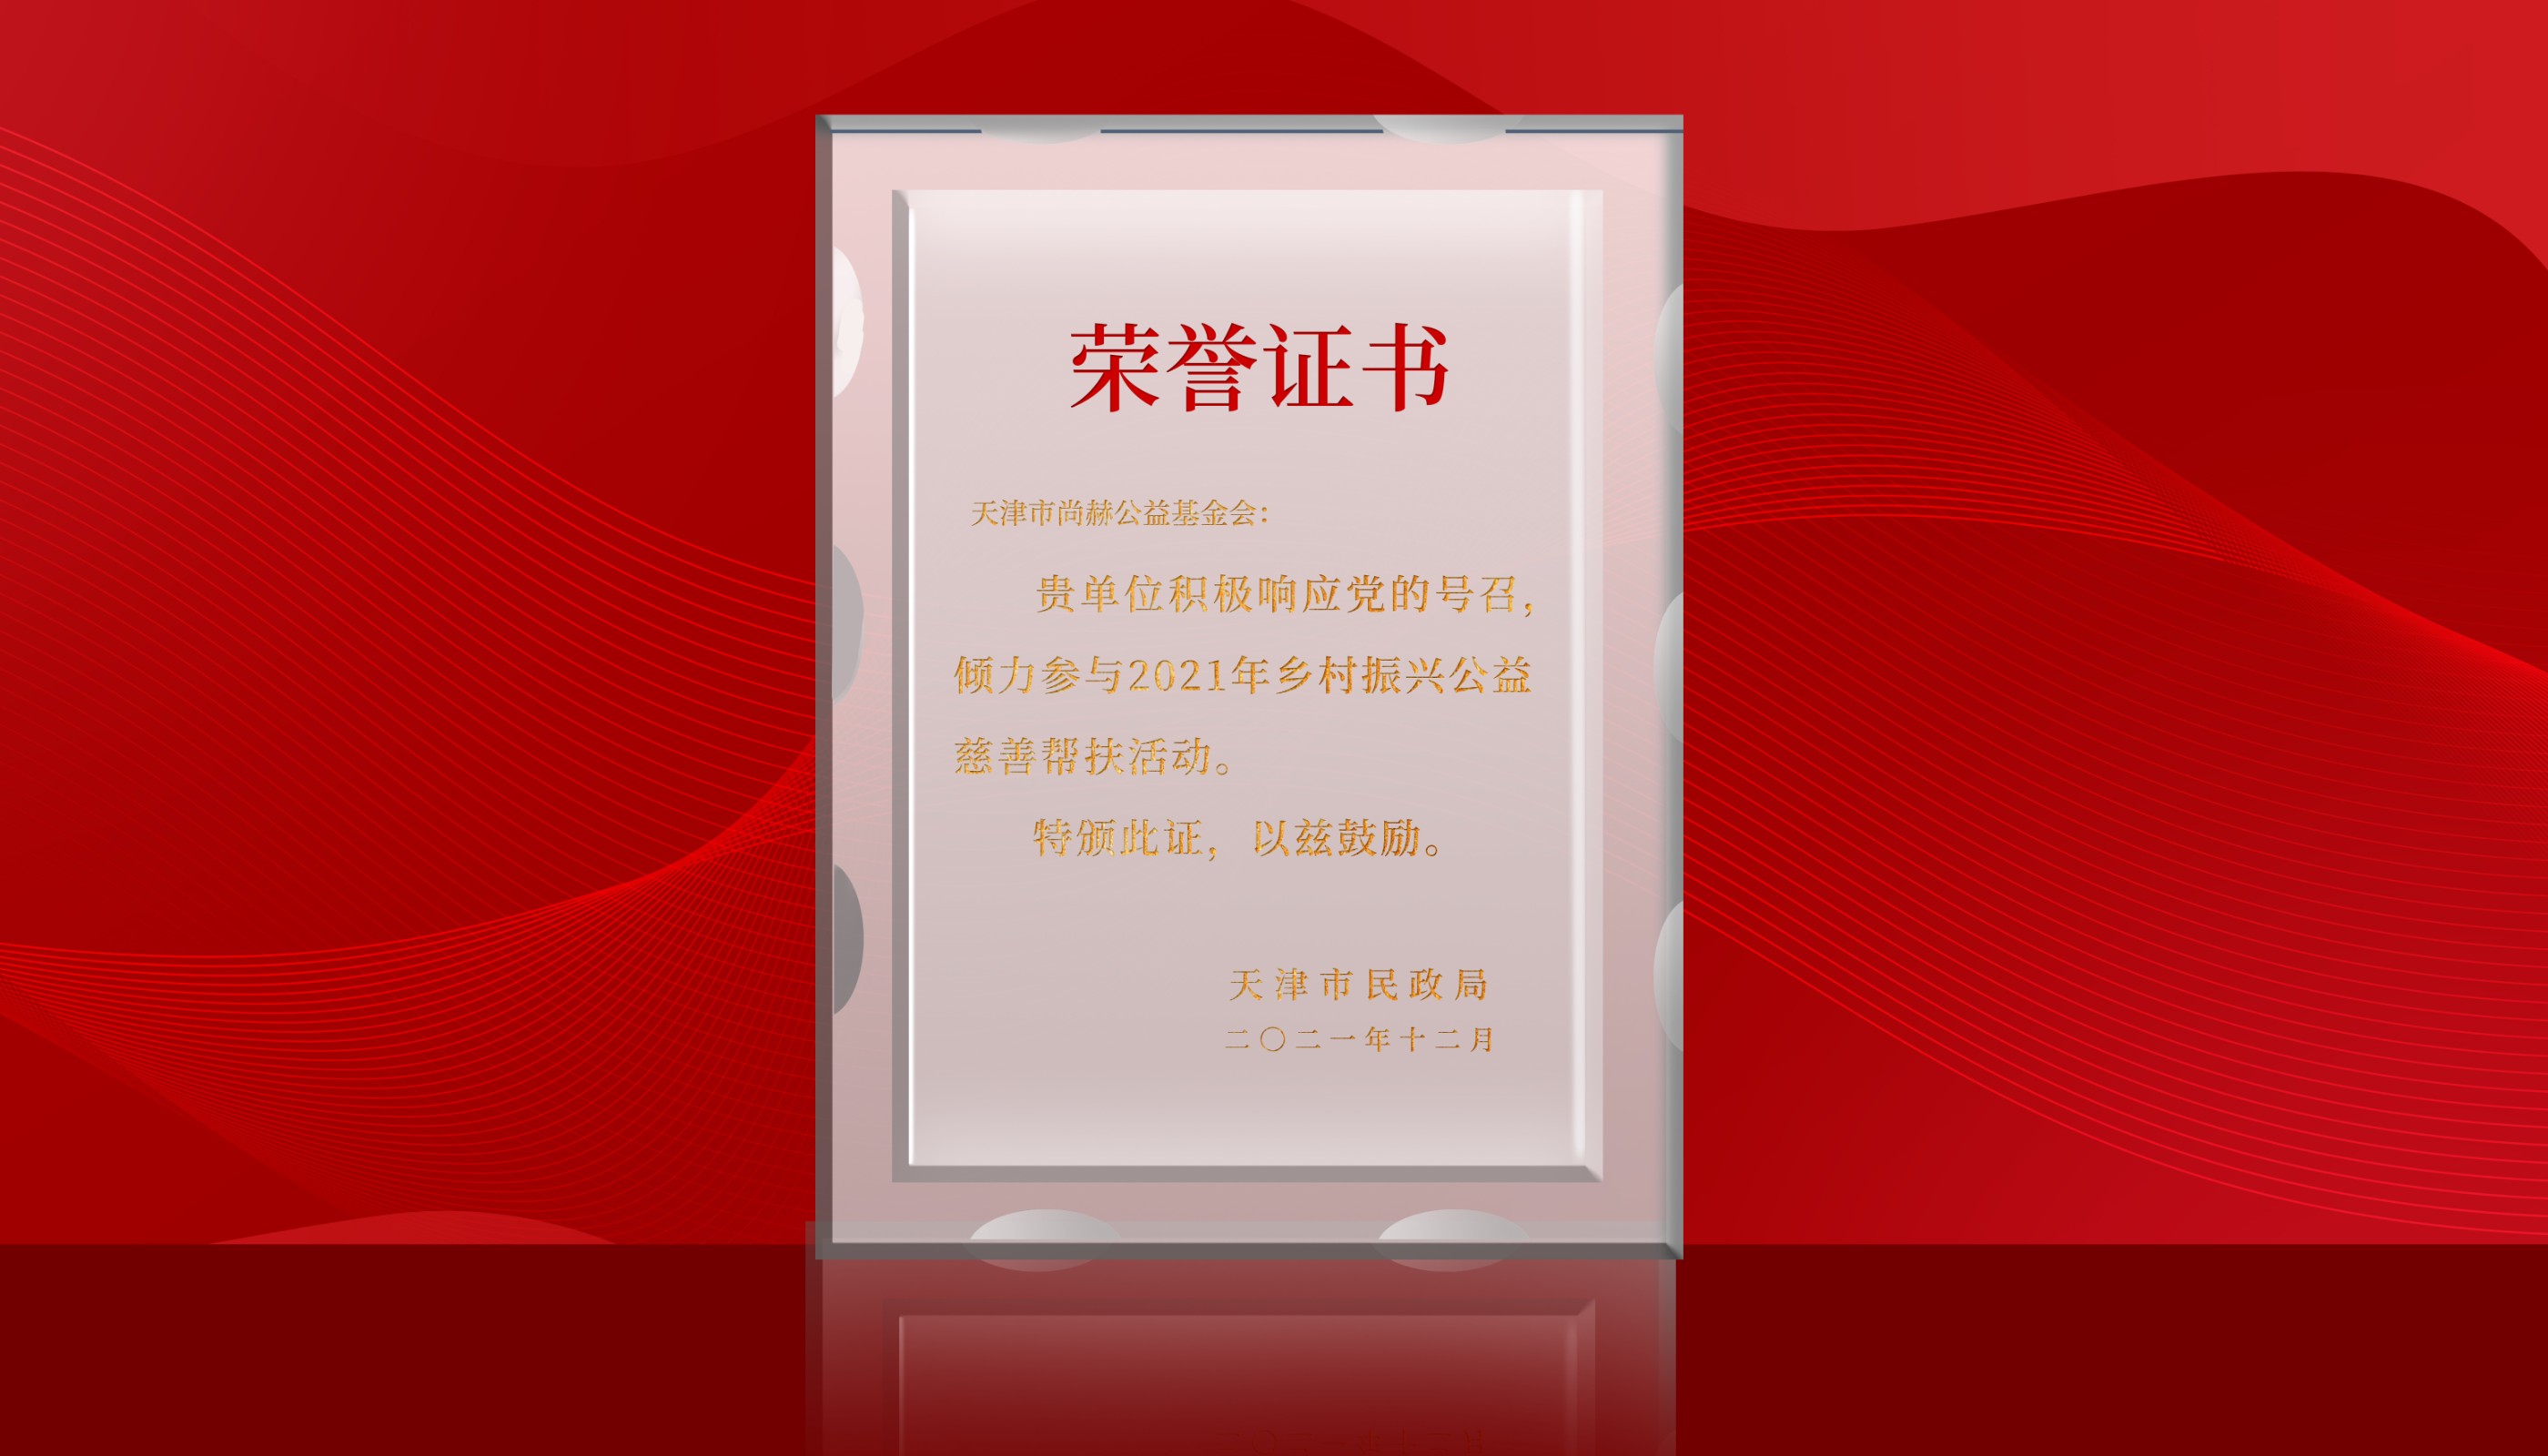 7月-皇家体育(中国)有限责任公司公益基金会荣获天津市民政局颁发的荣誉证书